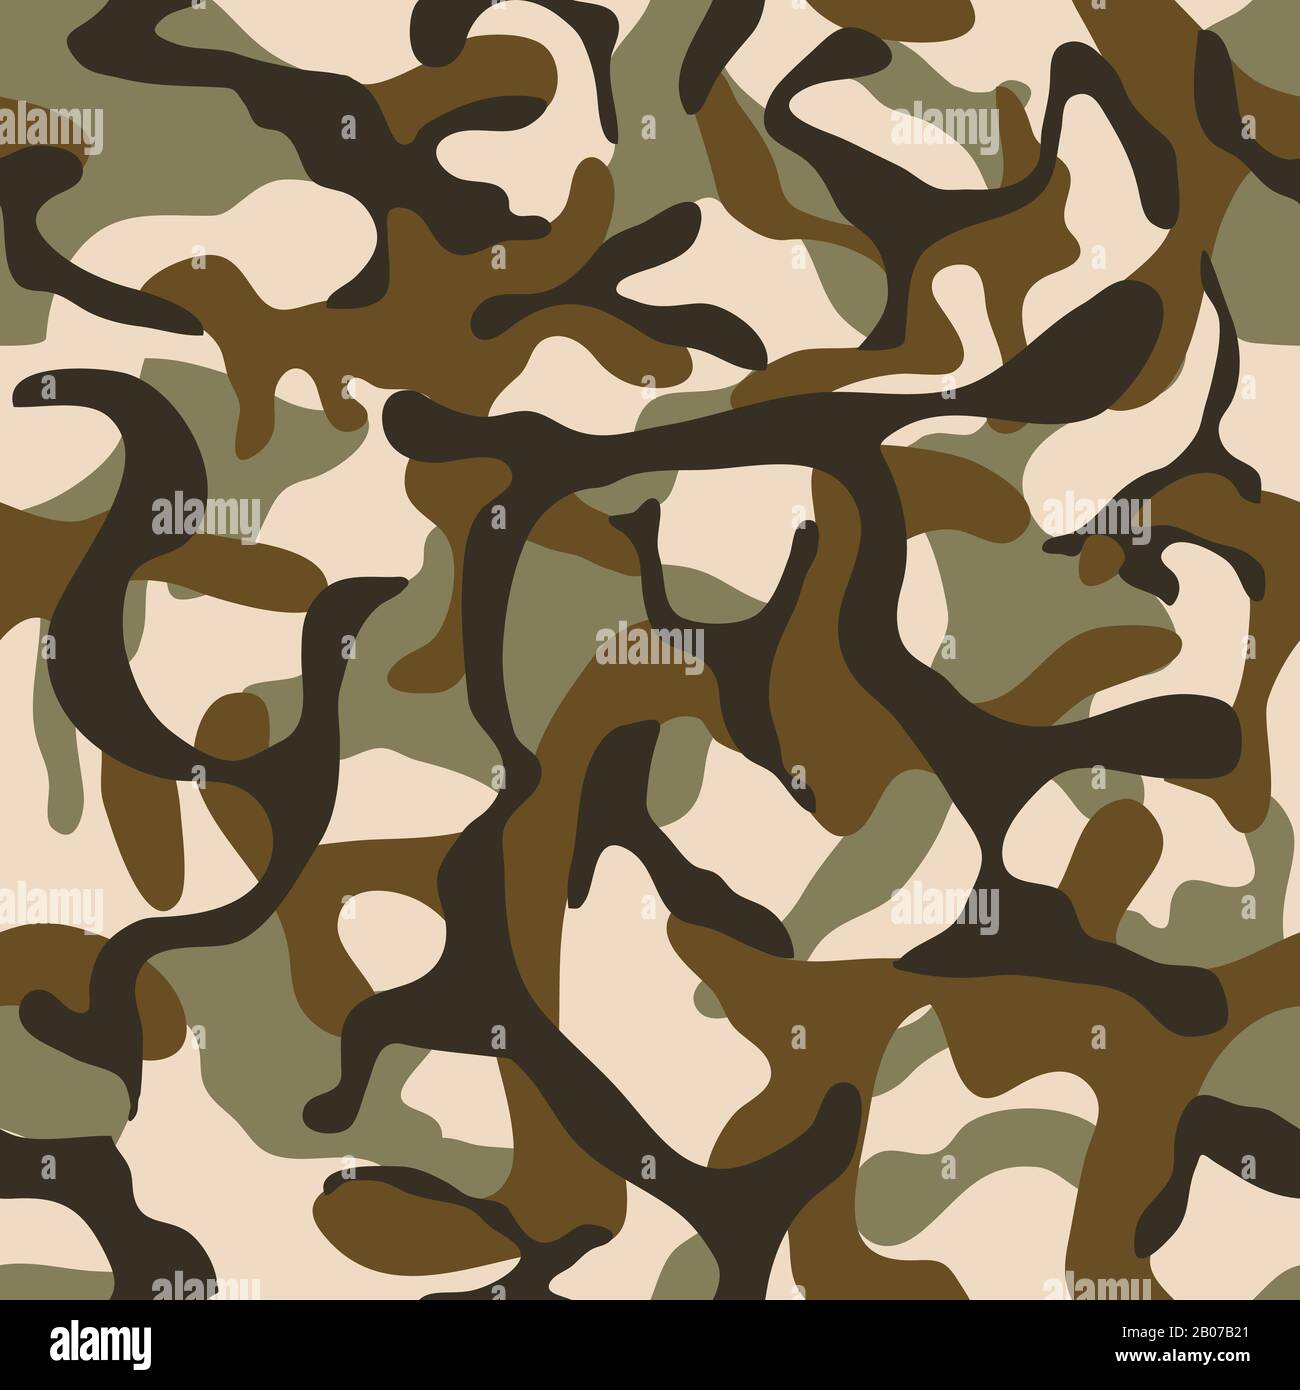 Camouflage, Militärvektor, nahtloses Muster. Armee-Hintergrundkleidung für einheitliche Soldatenillustration Stock Vektor